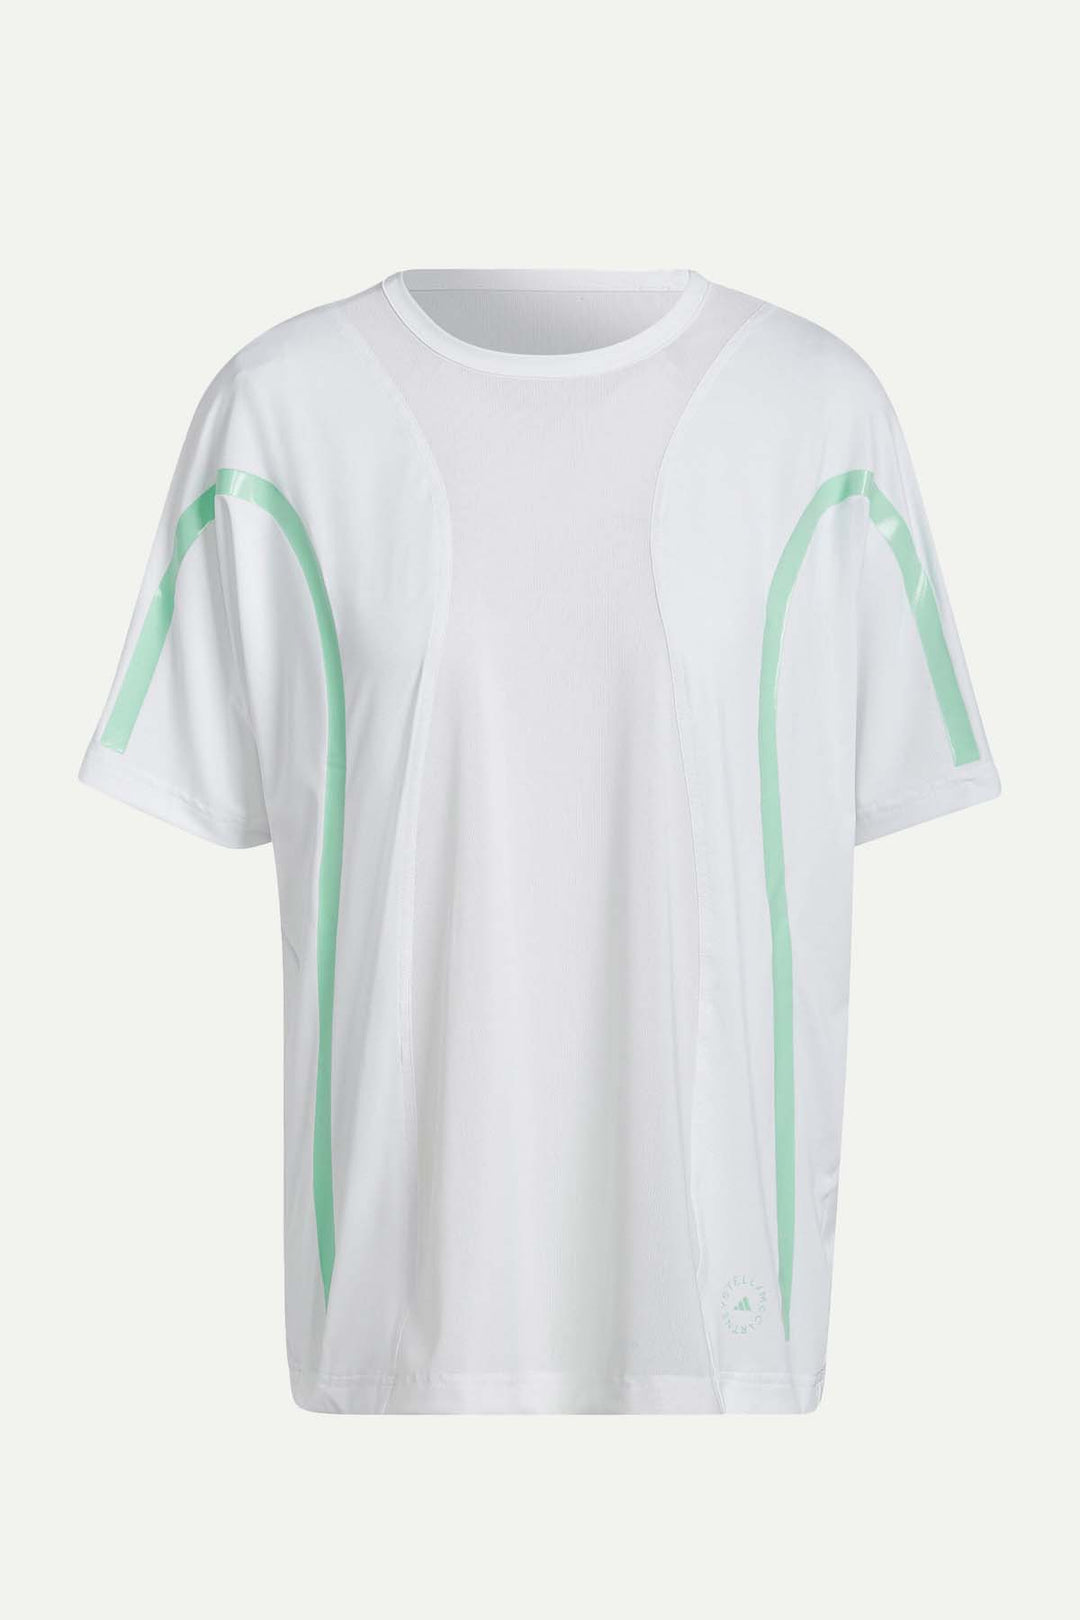 חולצת טי שירט שקפקפה בצבע לבן עם קווים אמורפיים - Adidas Stella